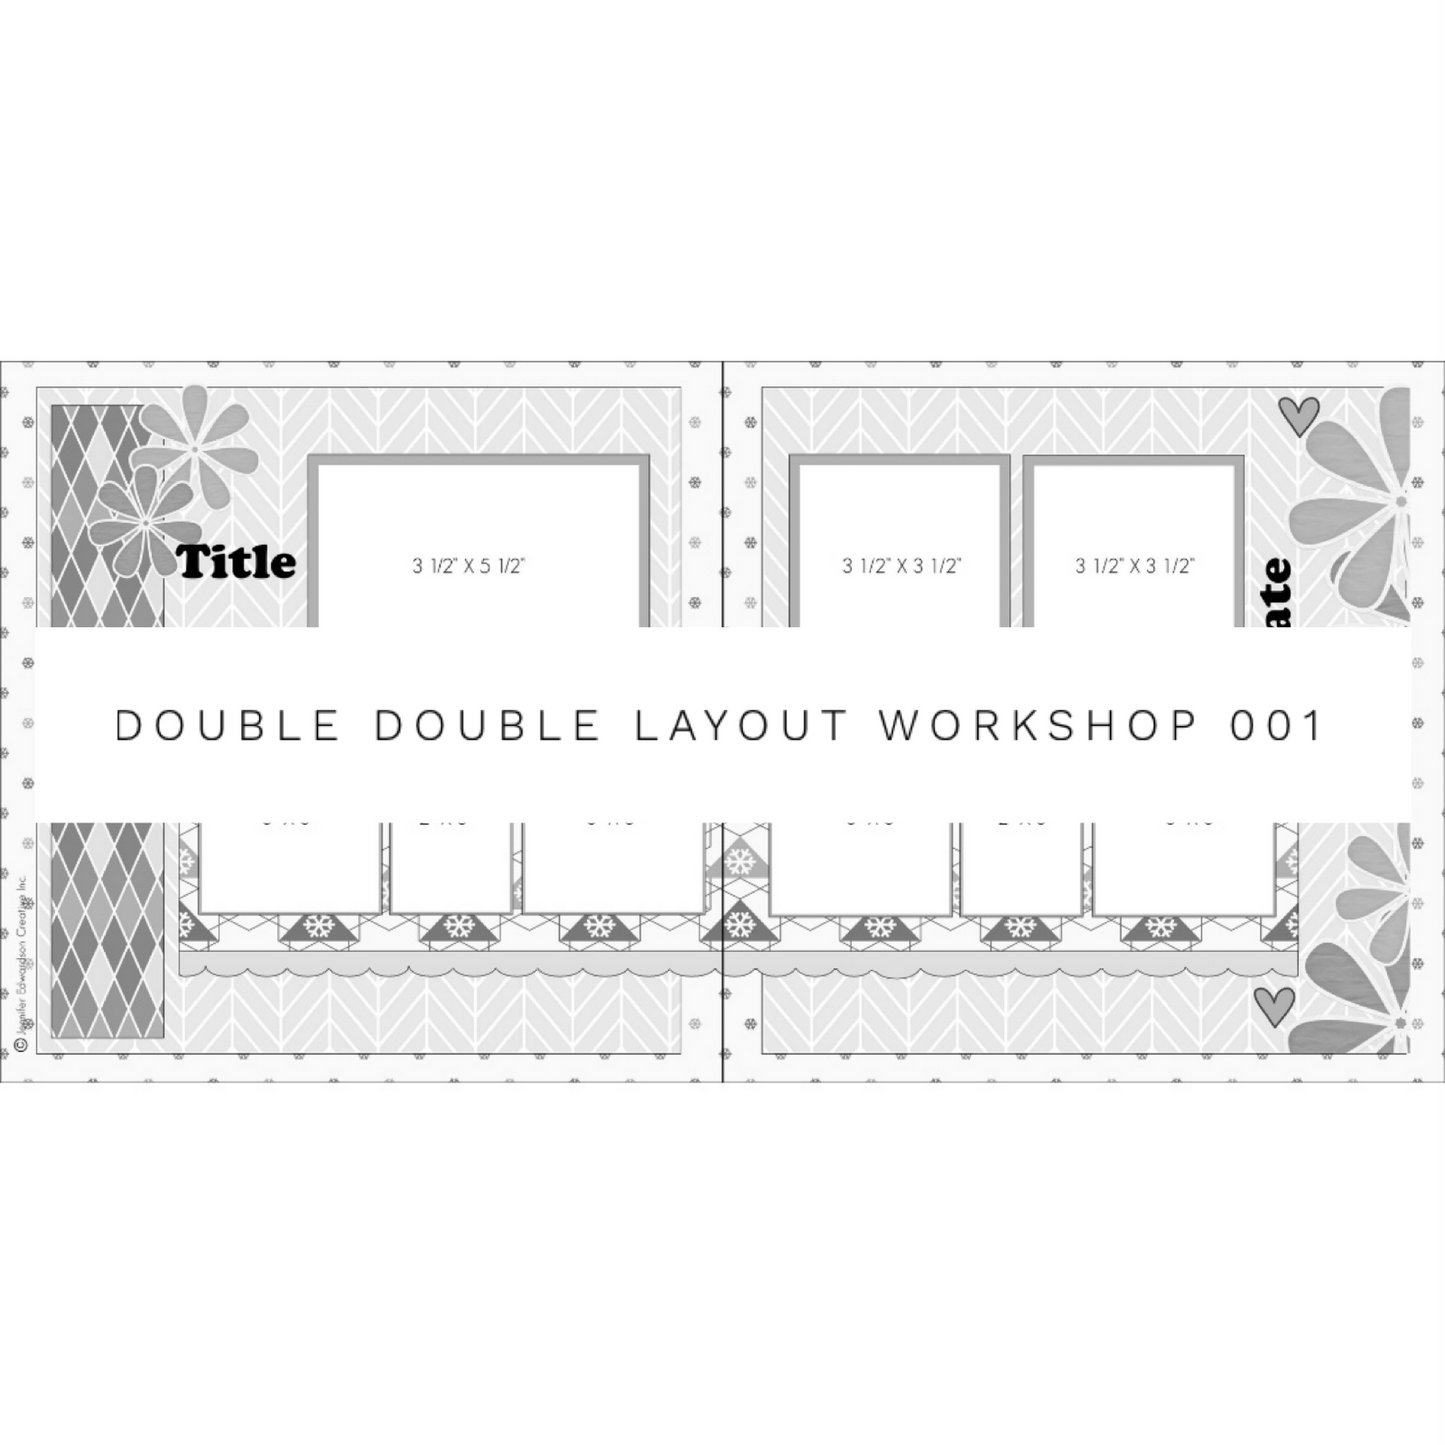 DOUBLE DOUBLE Layout Workshop 001